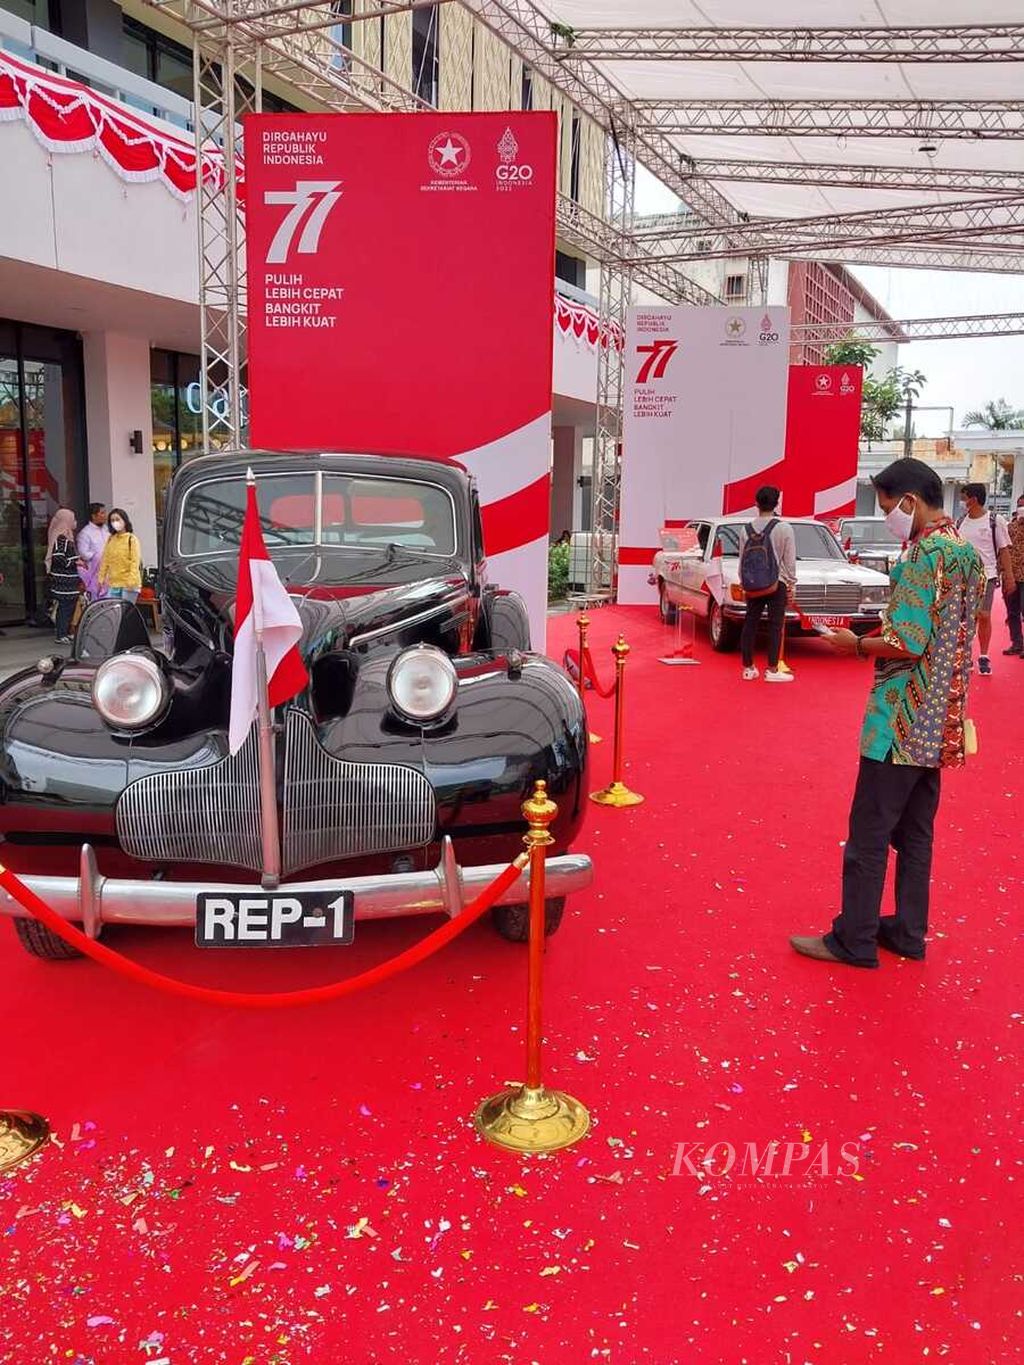 Pameran Arsip dan Mobil Kepresidenan mulai digelar di Sarinah, Jalan MH Thamrin, Jakarta Pusat, Sabtu (13/8/2022), Pameran yang menampilkan mobil para presiden serta beragam arsip bersejarah tersebut merupakan rangkaian peringatan Hari Ulang Tahun Ke-77 Republik Indonesia.